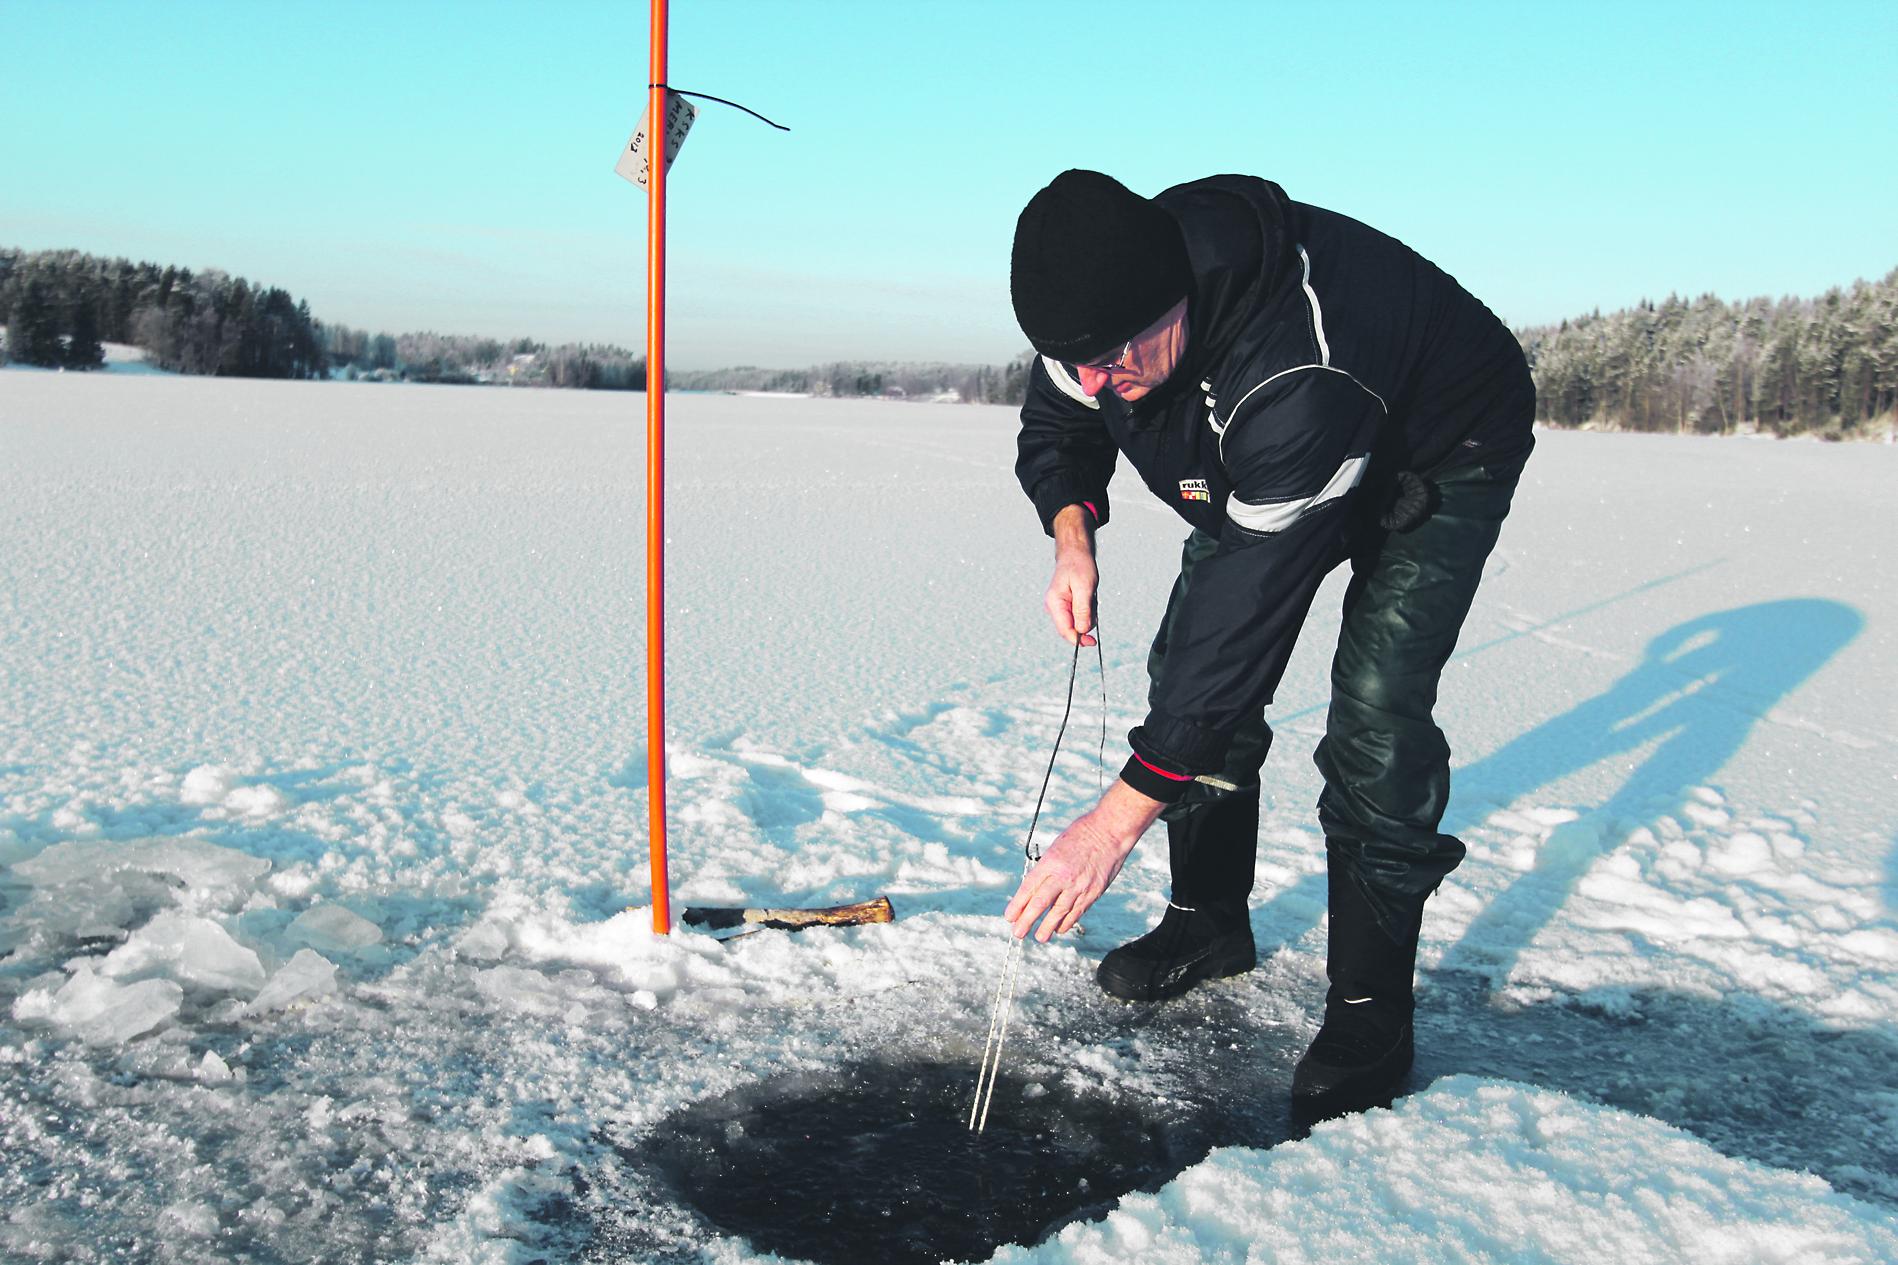 Talvikalastus on täydessä vauhdissa – merkkisalko jäällä kertoo avannosta